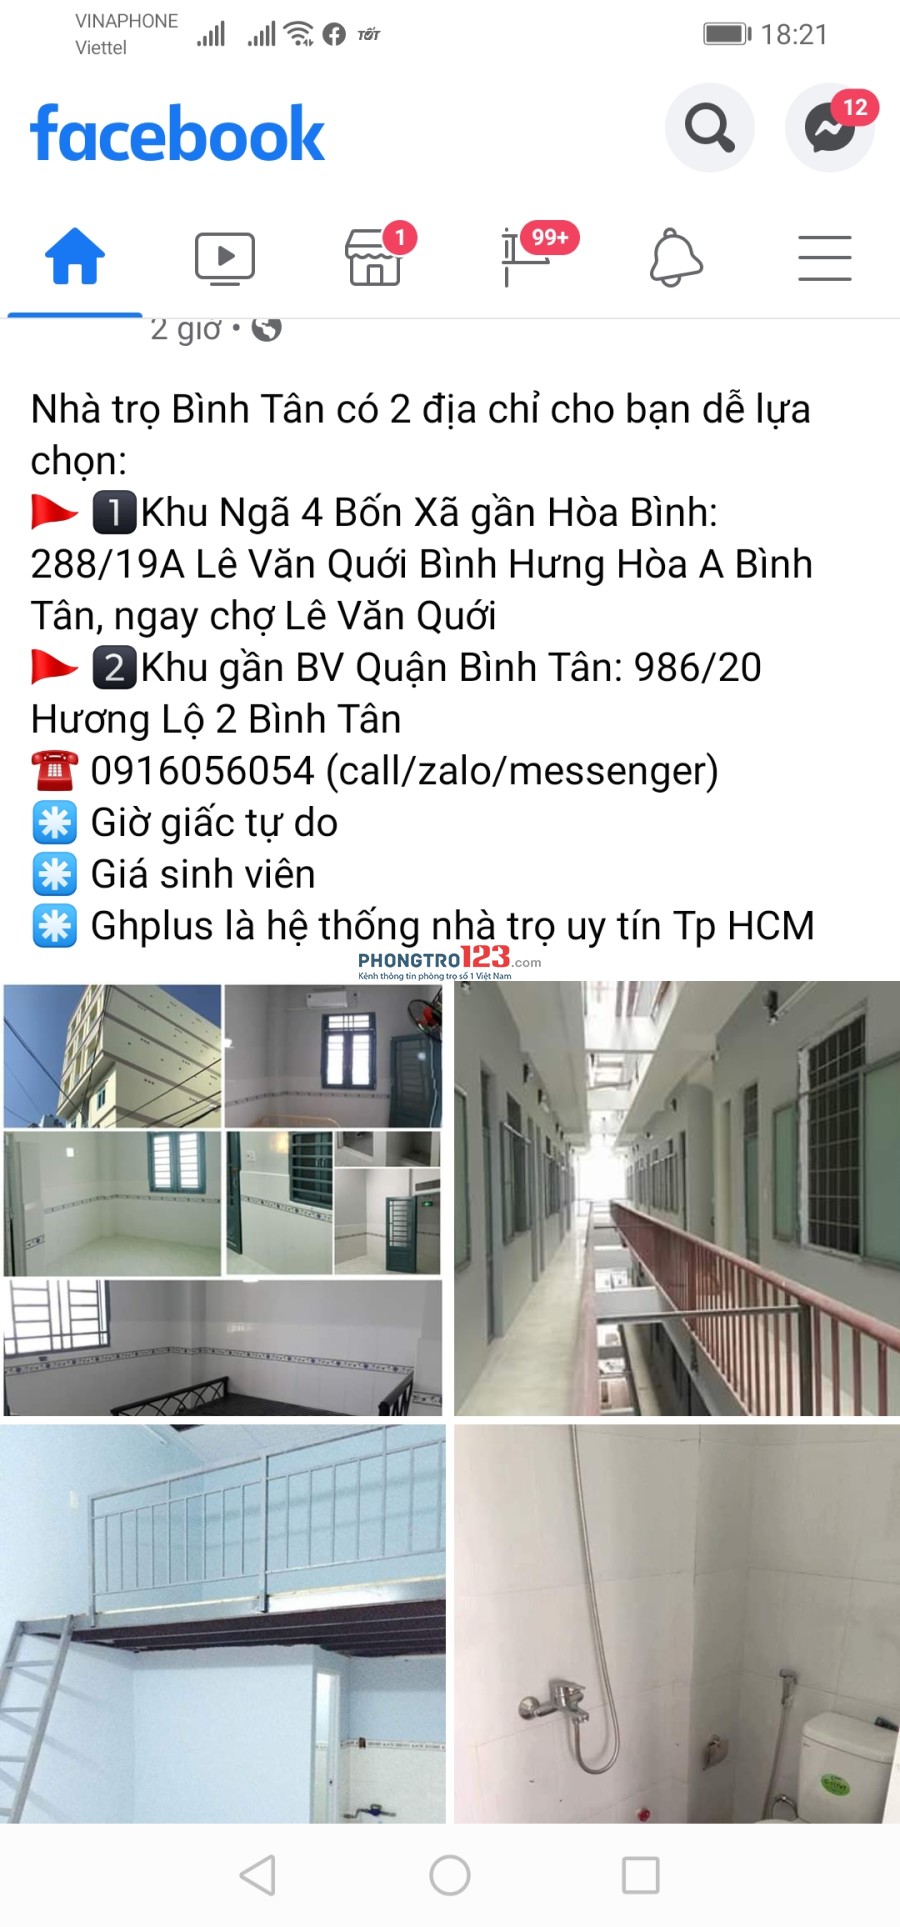 Phòng trọ cao cấp gia bình dân 986/20 Hương lộ 2 Quận Bình Tân